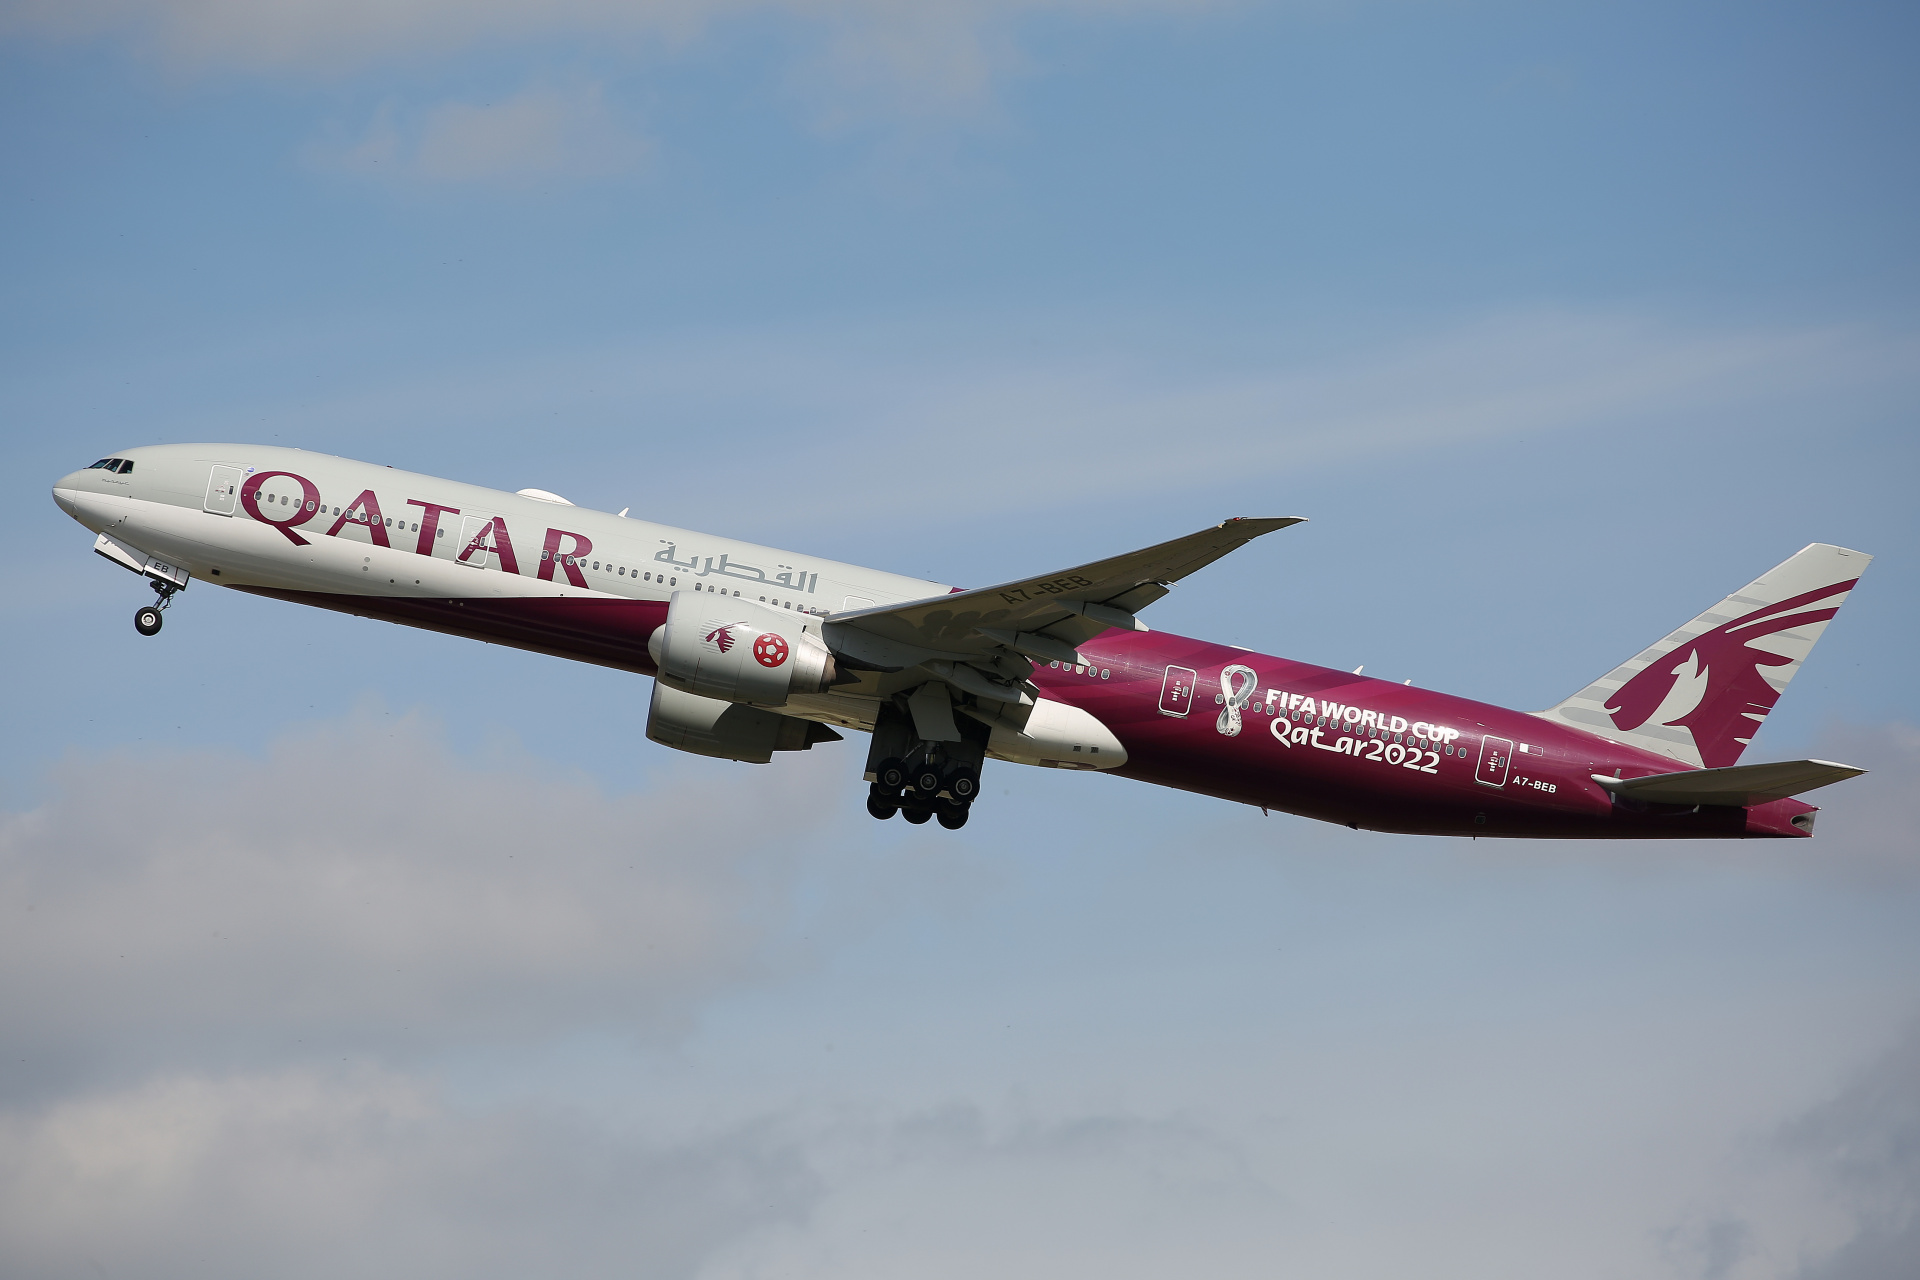 A7-BEB, Qatar Airways (FIFA World Cup Qatar 2022 livery) (Aircraft » Schiphol Spotting » Boeing 777-300ER)